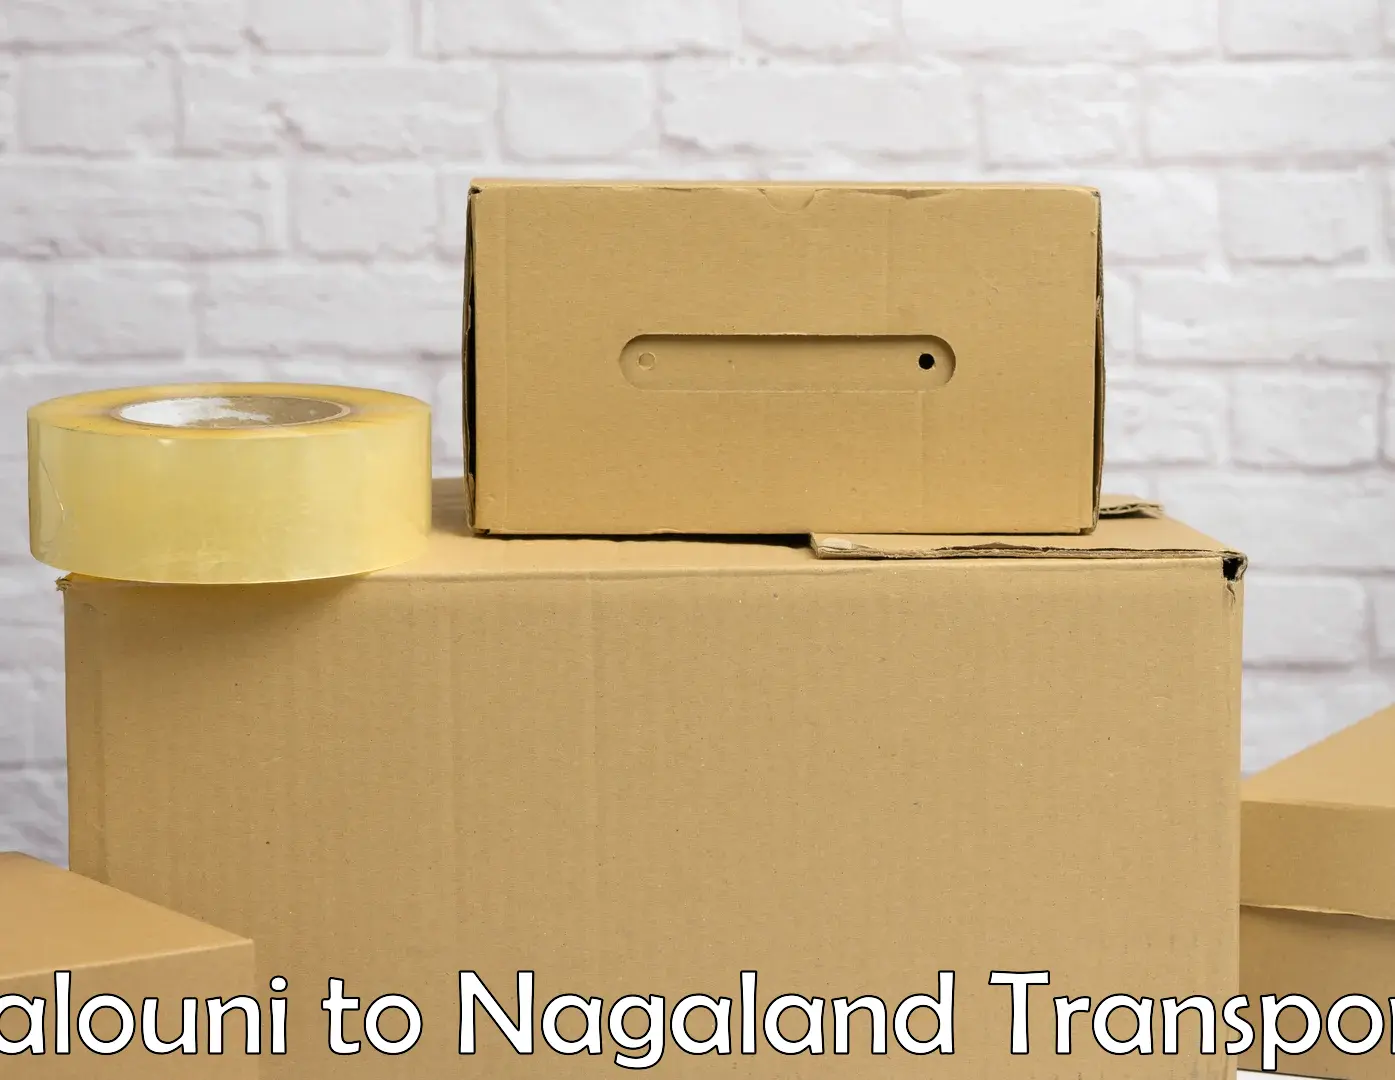 Daily transport service Salouni to Nagaland